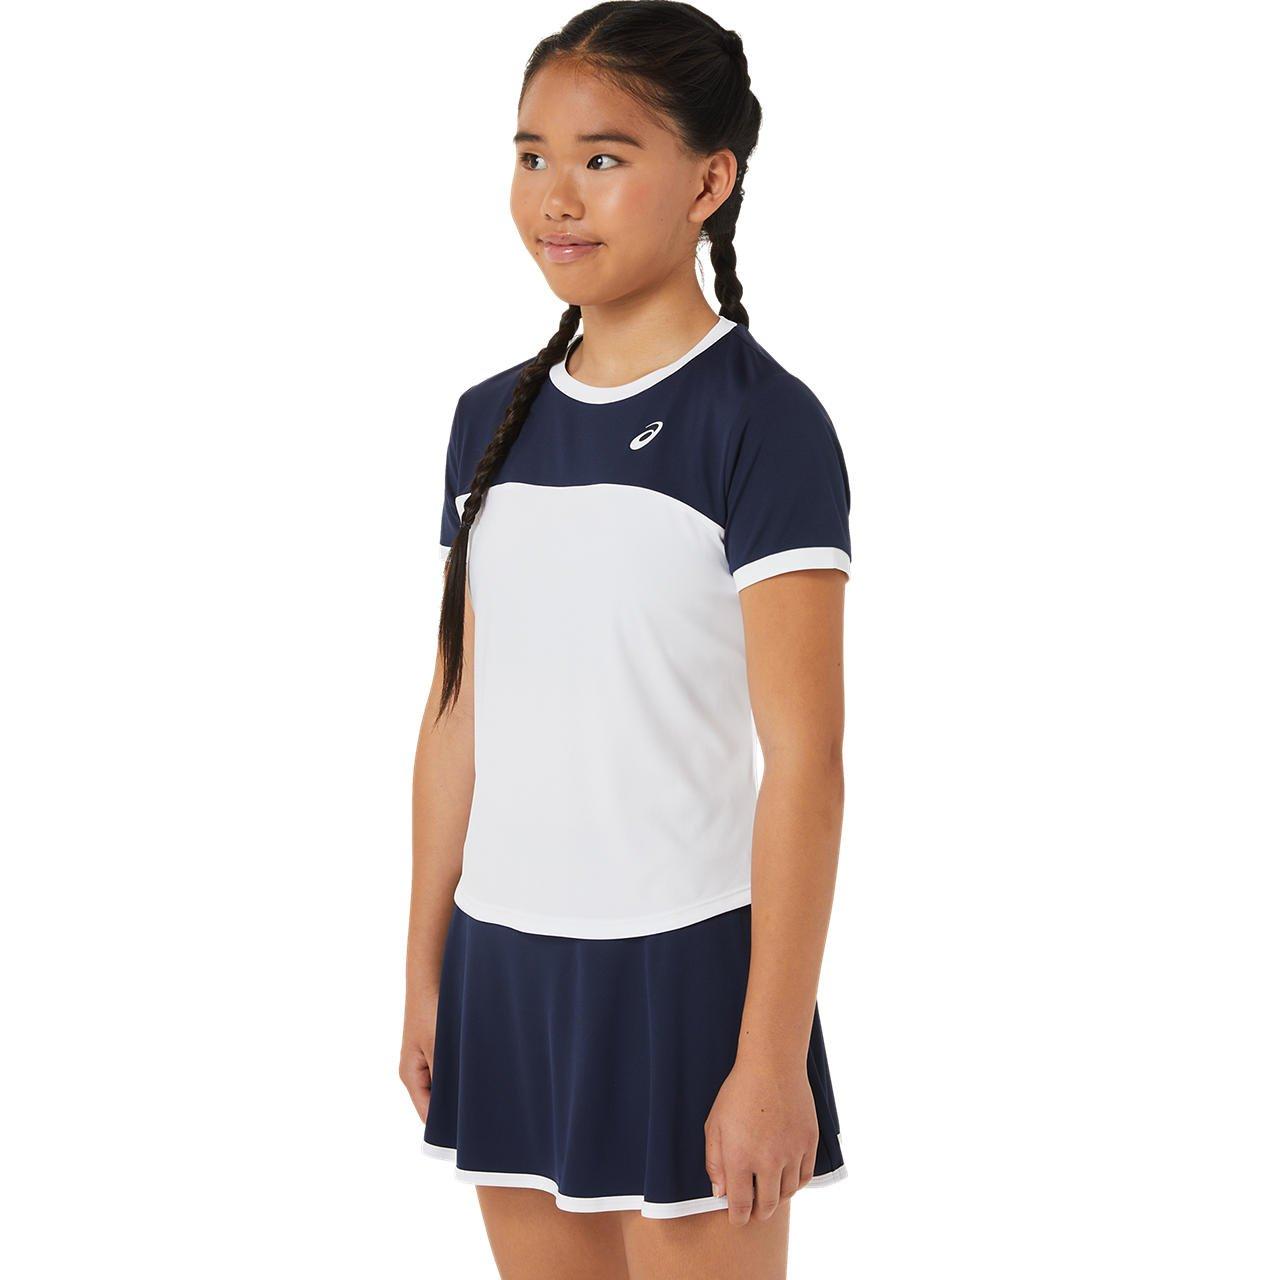 Tennis Gpx Top Kinder Unisex  XL von asics